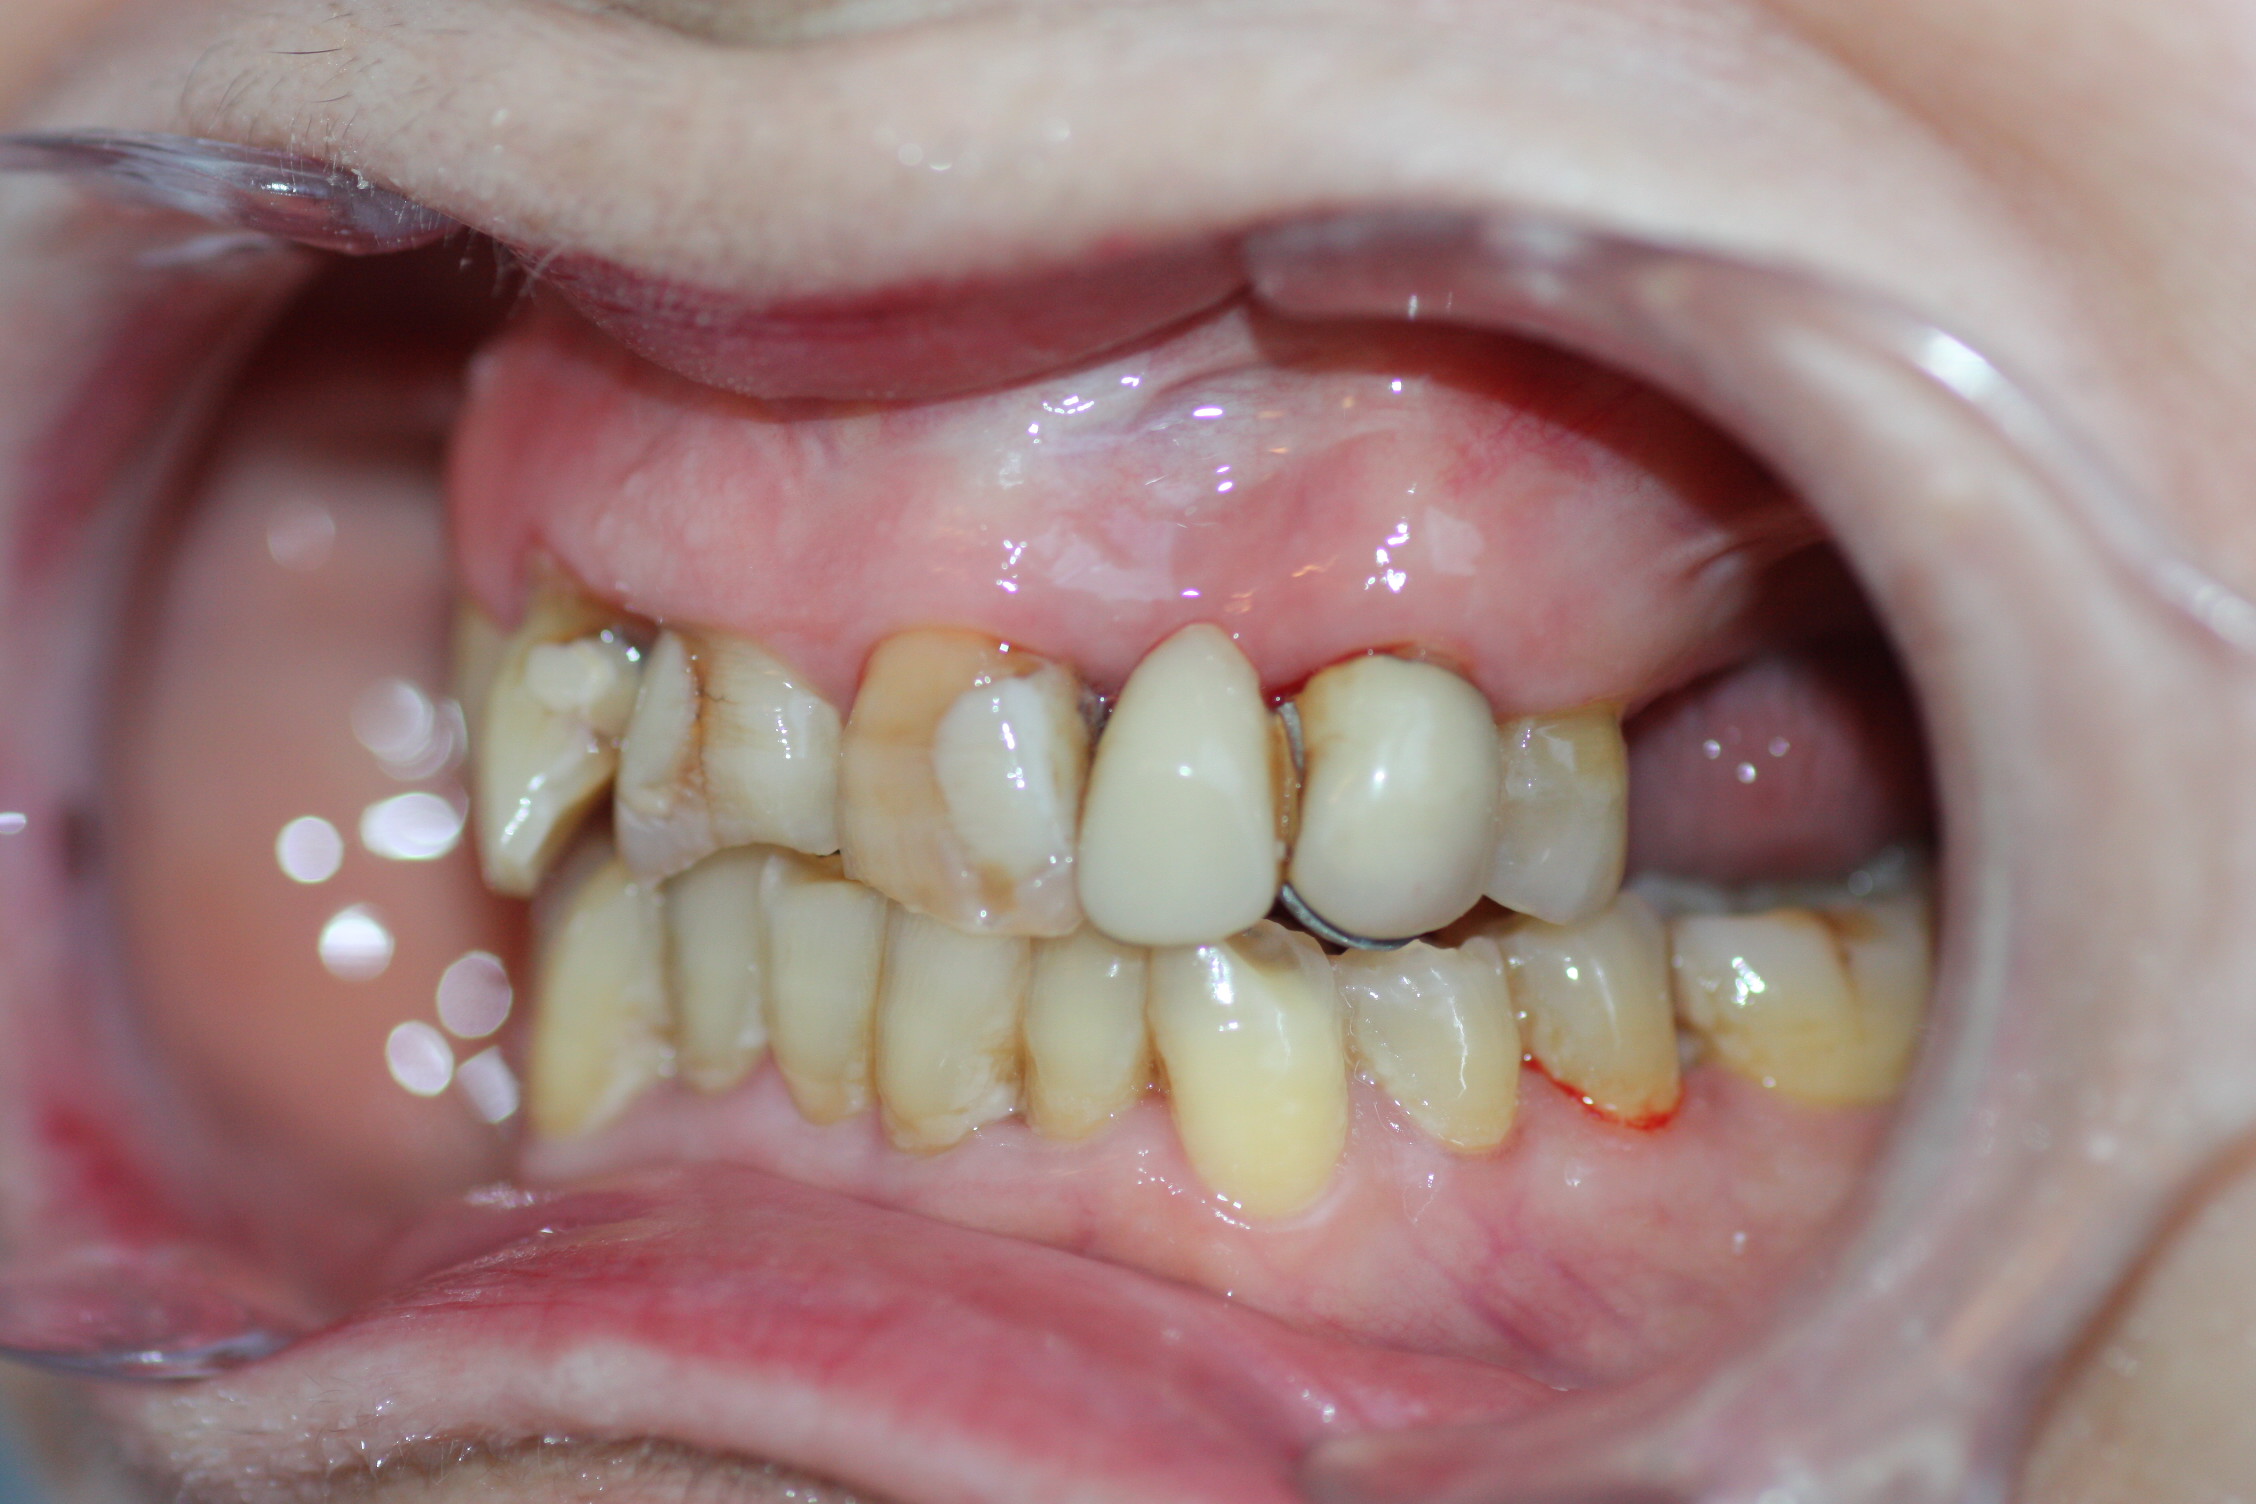 En este caso necesitamos planificar una rehabilitación integral que mejore la estética de todos los dientes, para lo que se prevé un tratamiento con ortodoncia y prótesis fijas